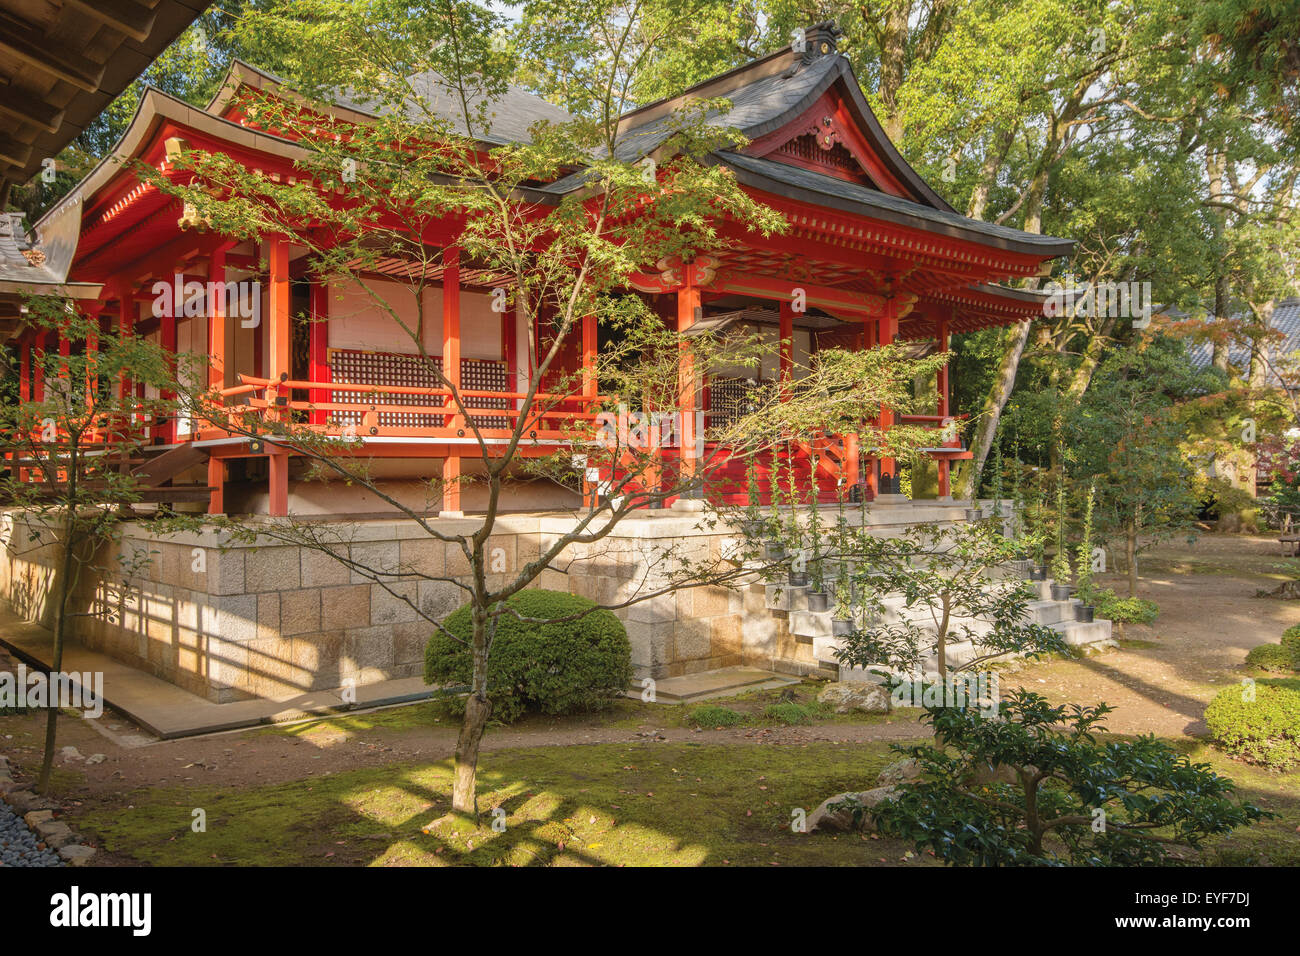 Red Japanese temple building et jardin ; de Arashiyama, Kyoto, Japon Banque D'Images